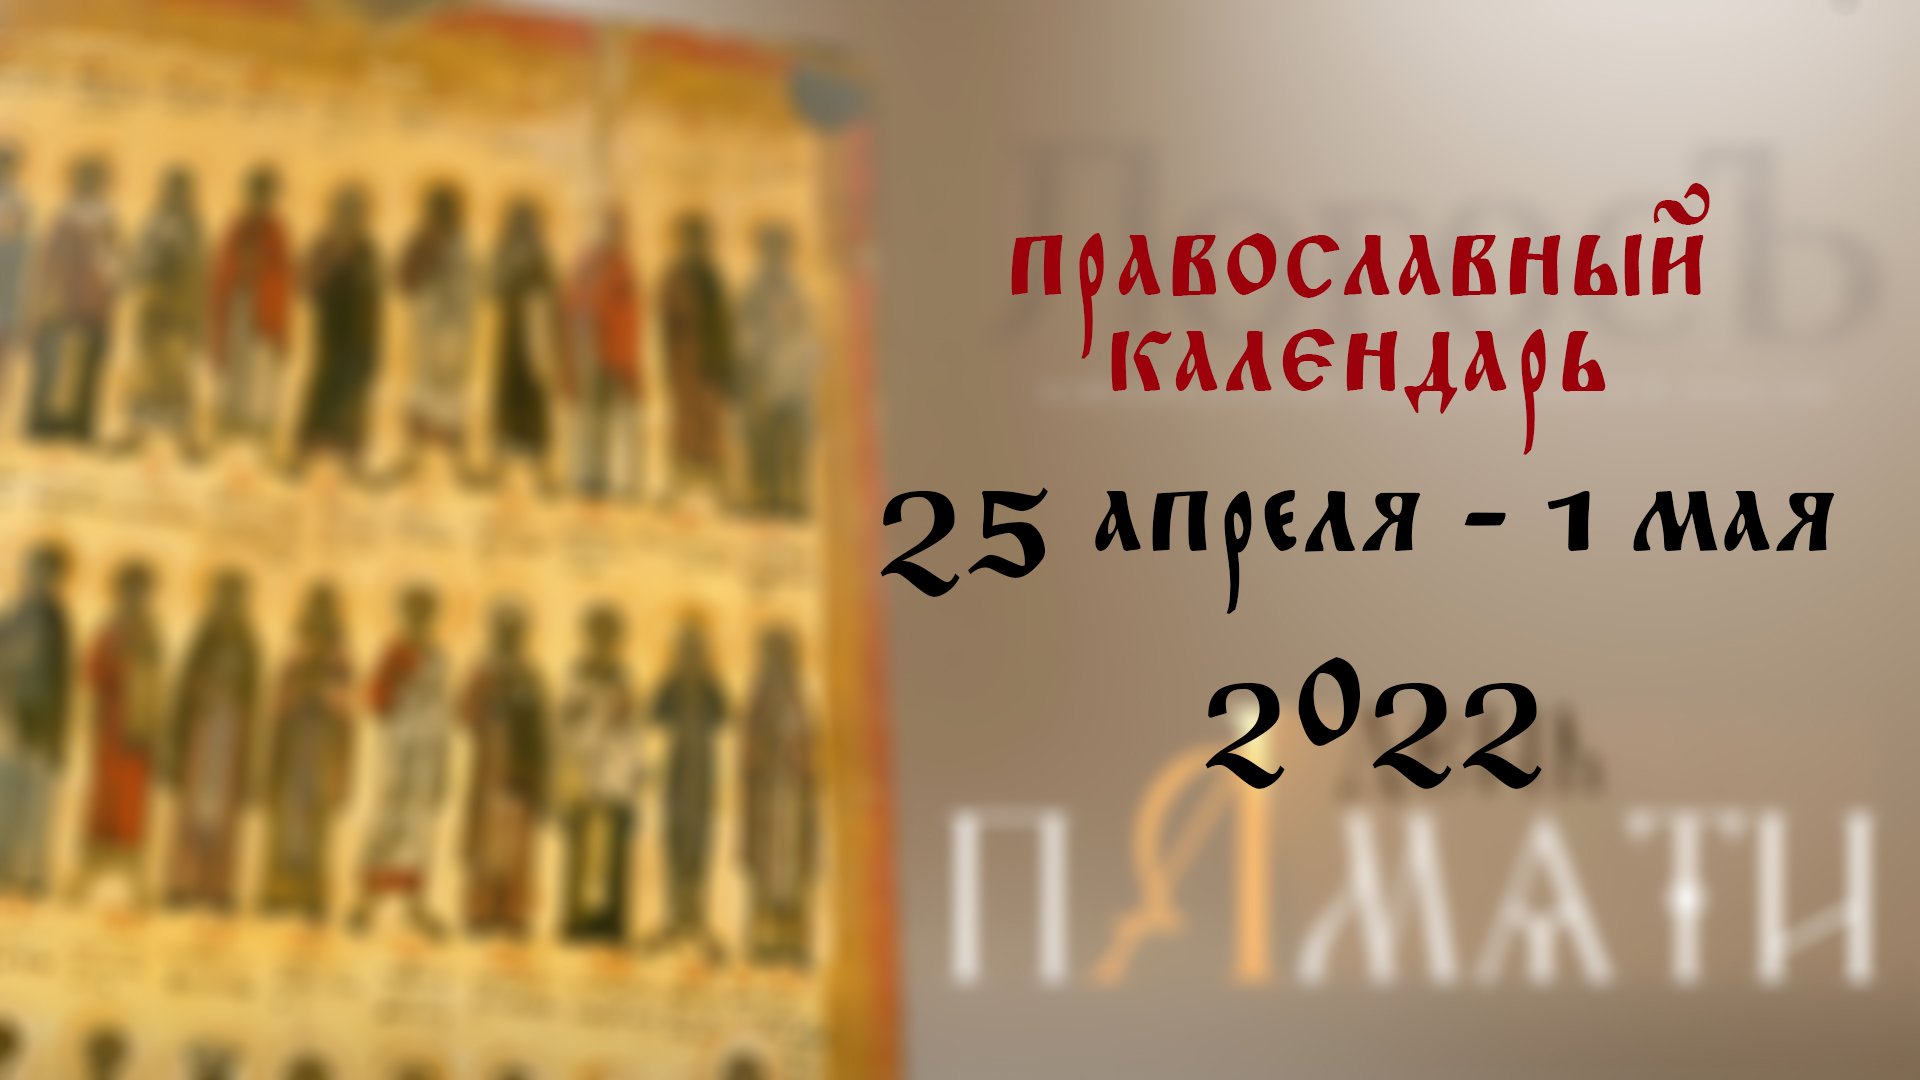 Какой сегодня праздник 16 апреля. С днем памяти святителей московских. С днем 25 июня православный. Большие православные праздники в 2023 году. Православный день 5 апреля.